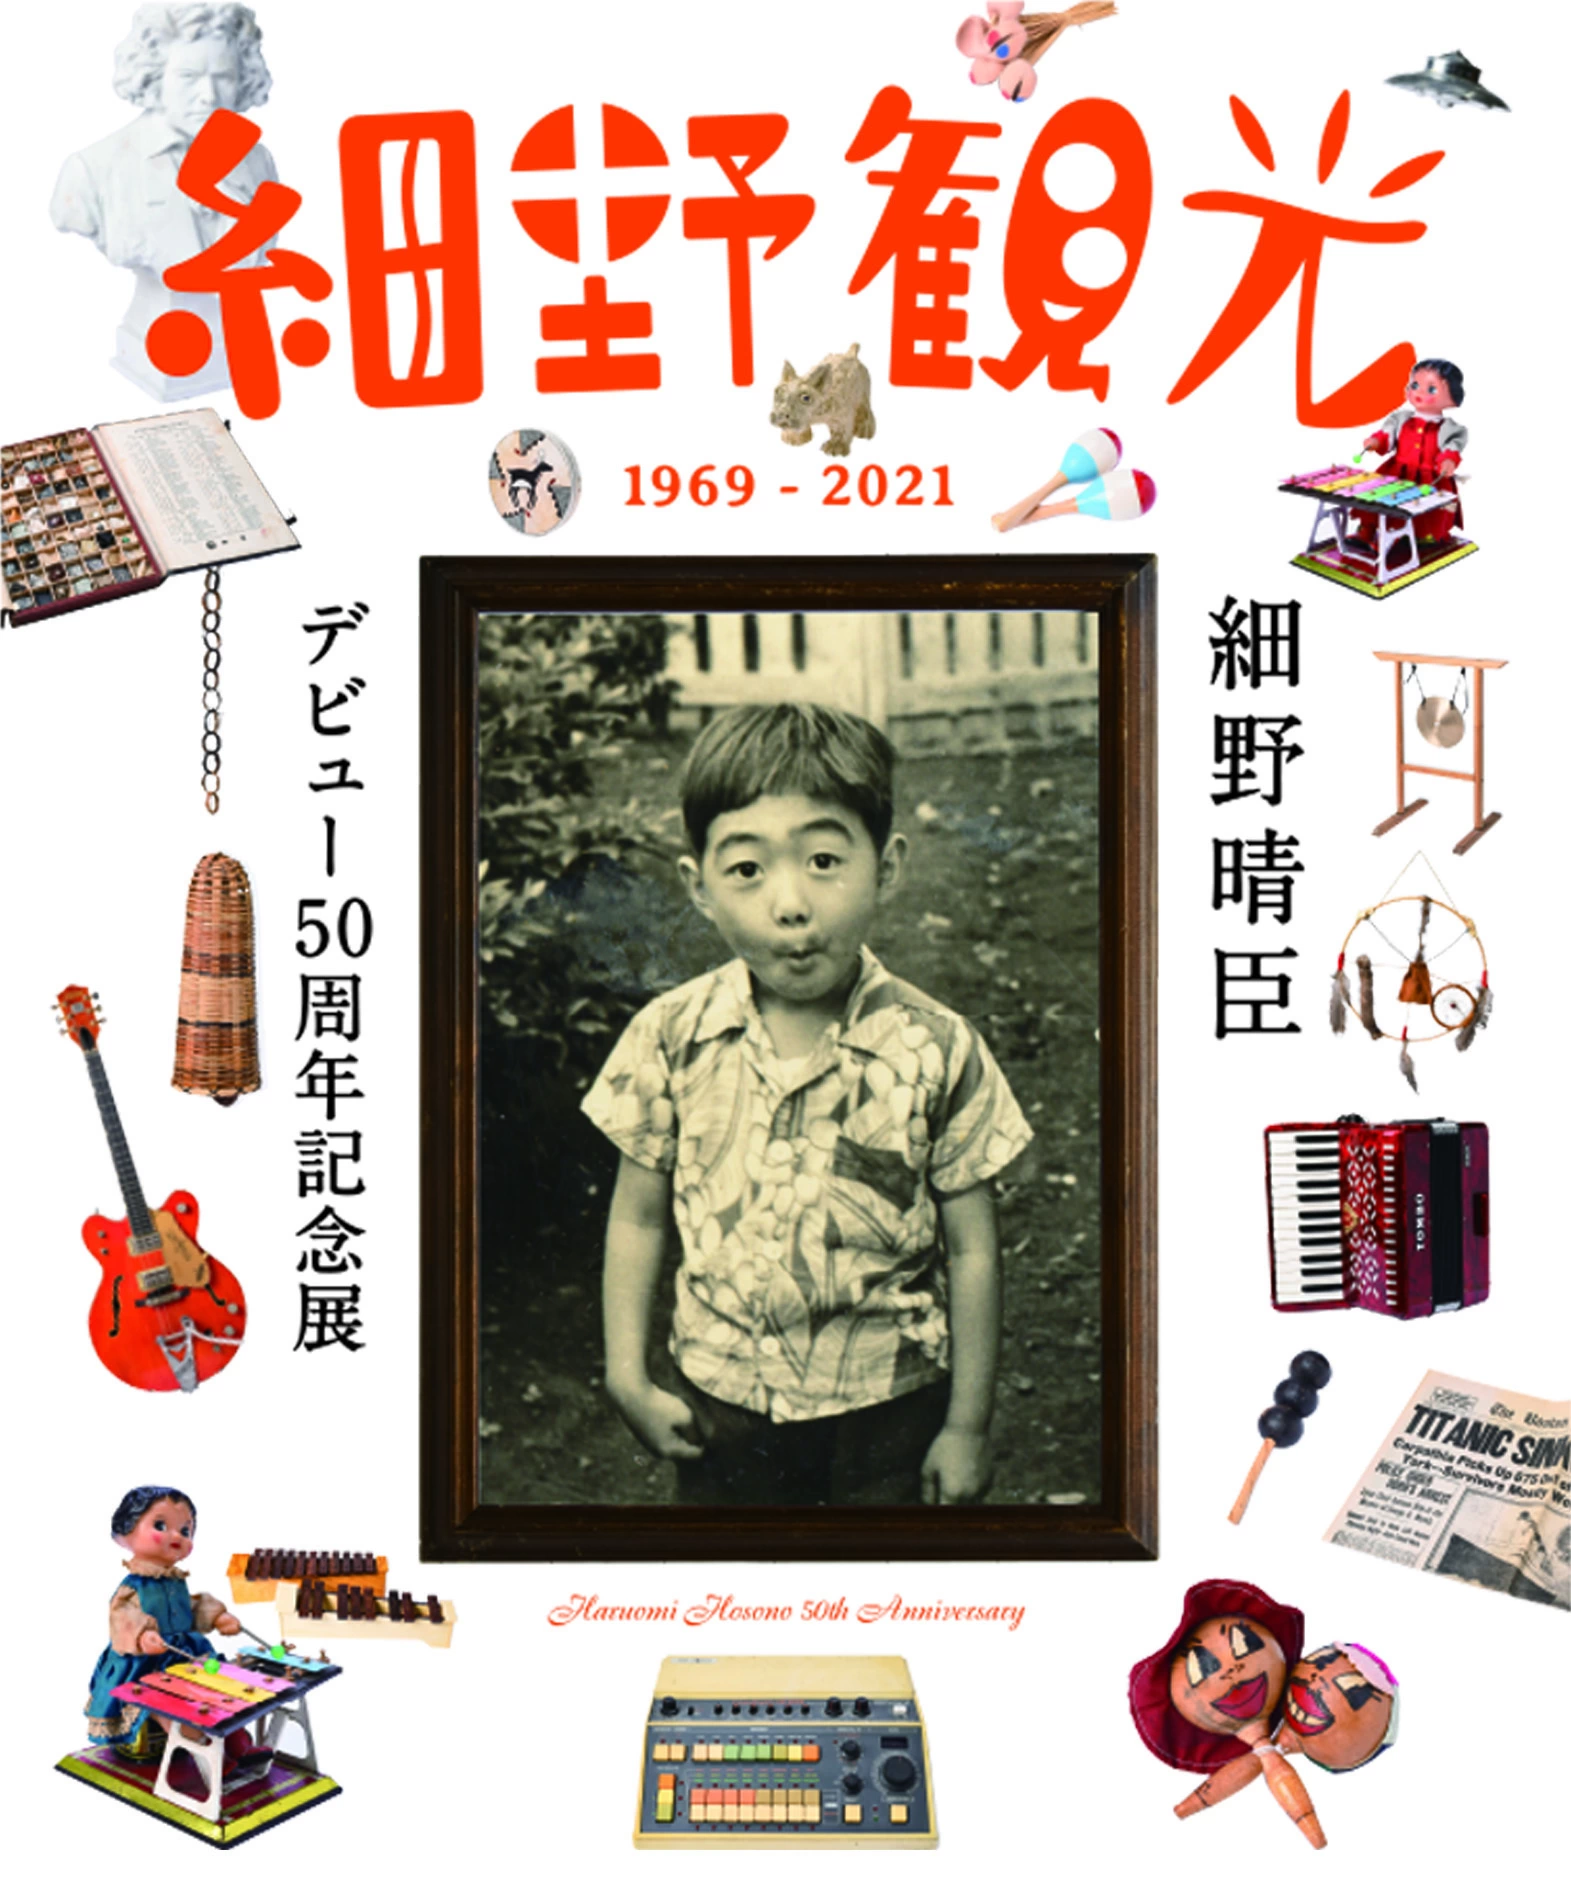 細野晴臣デビュー50周年記念展『細野観光1969-2021』